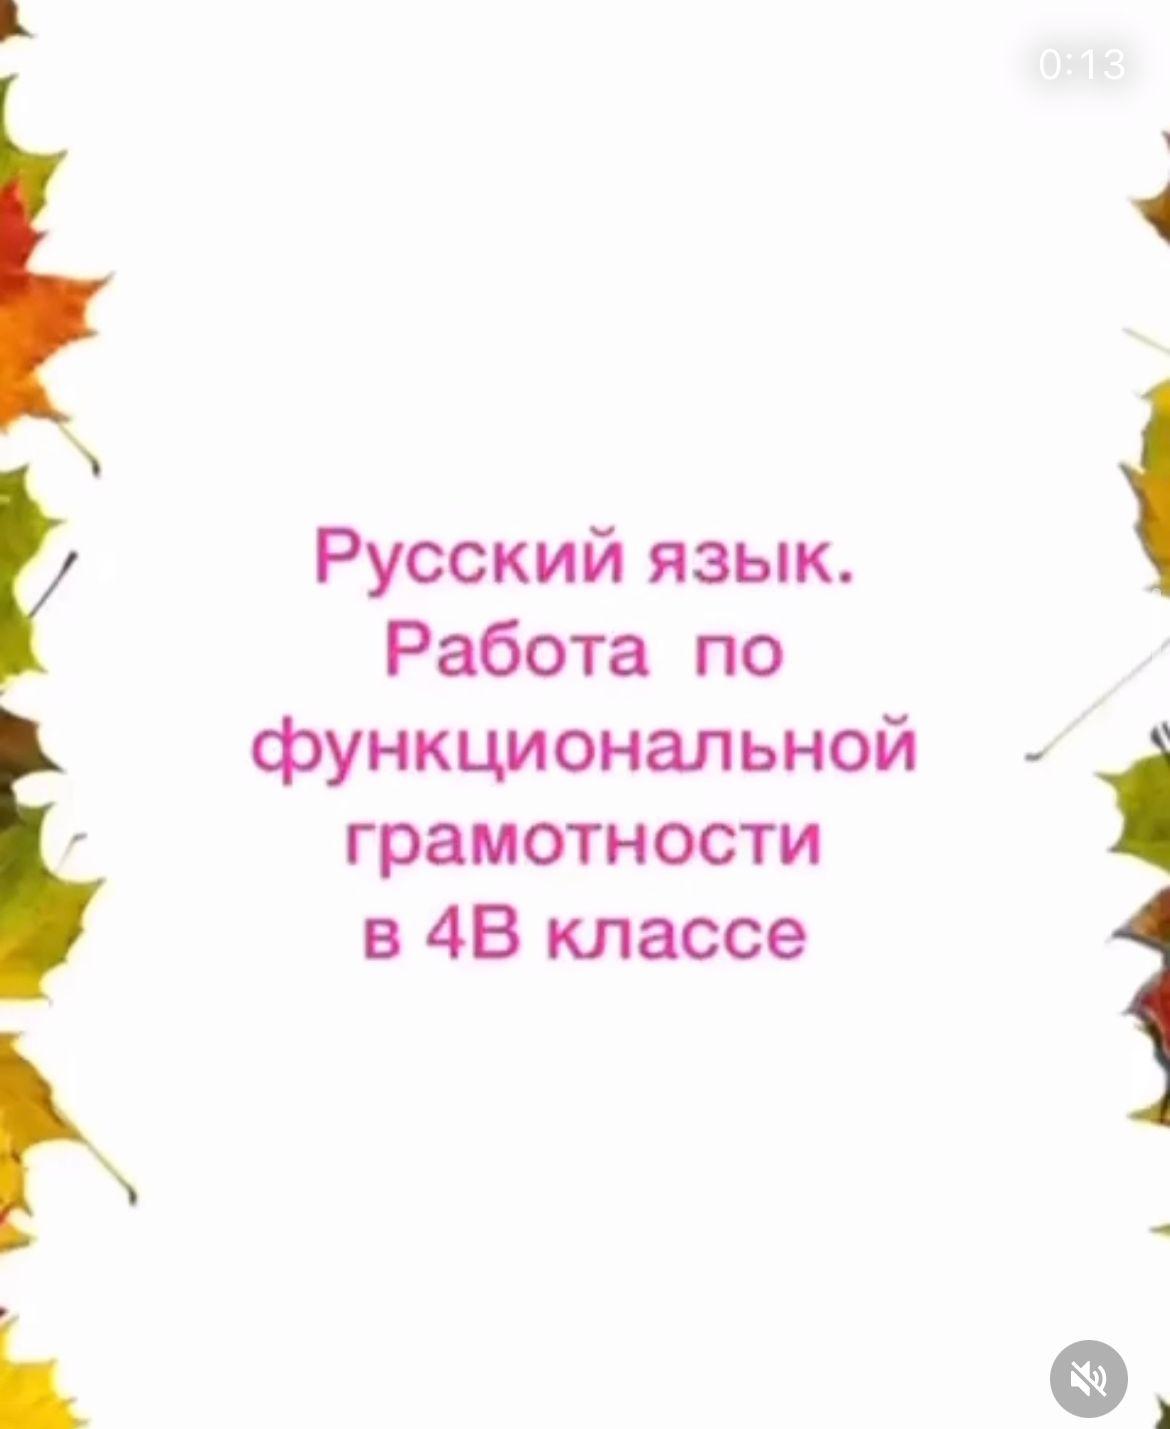 Работа по функциональной грамотности по русскому языку в 4В классе